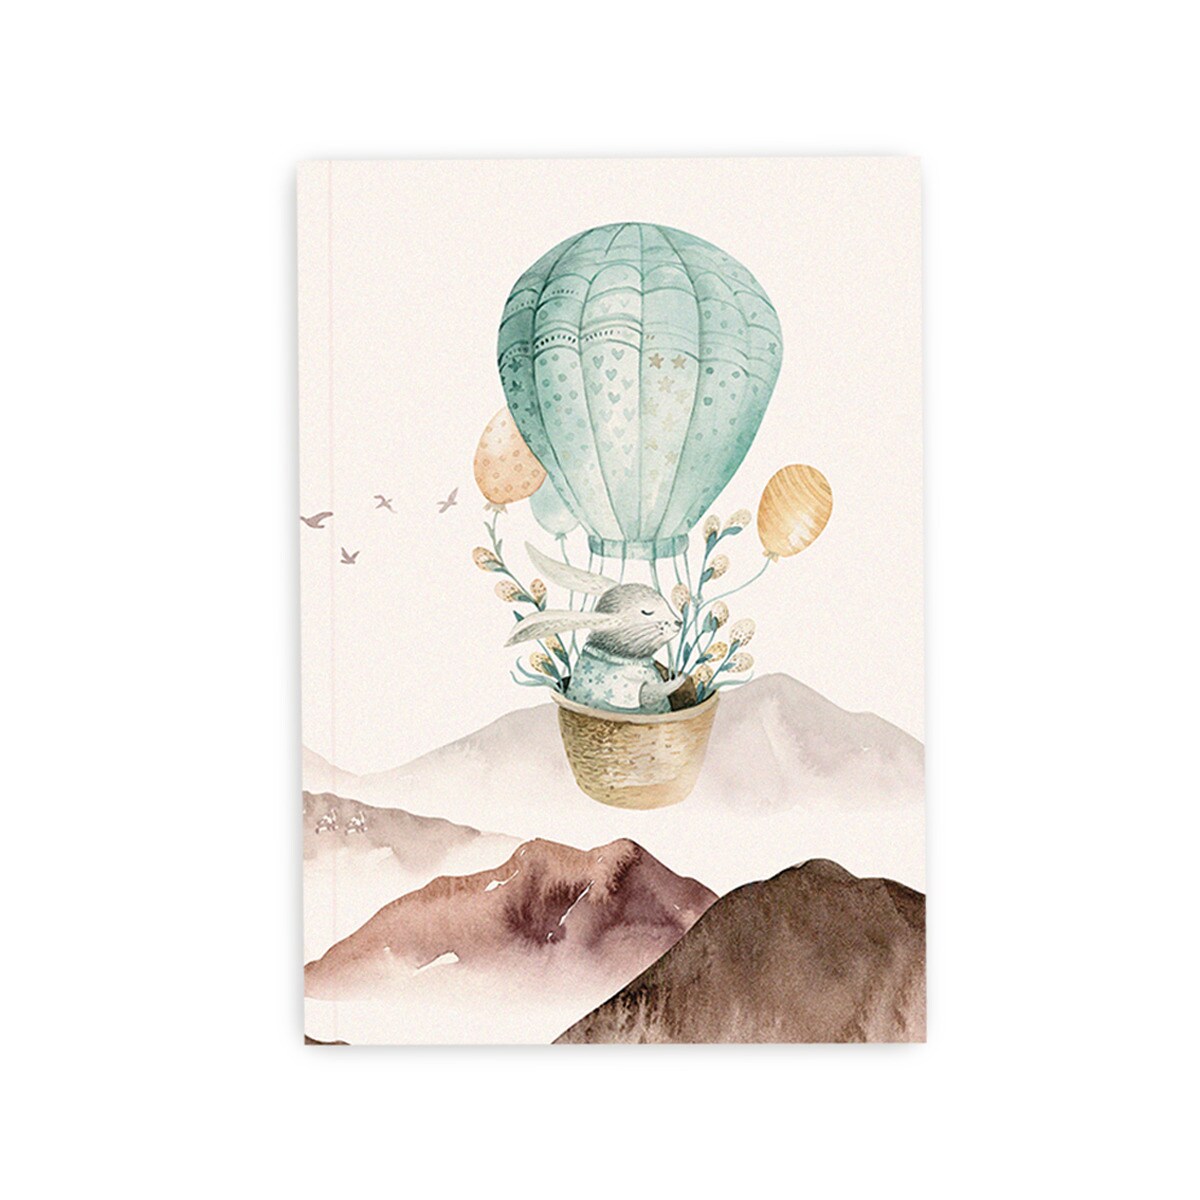 cuaderno-happy-animals-balloon-trip-cuquiland-betina-shop_alz